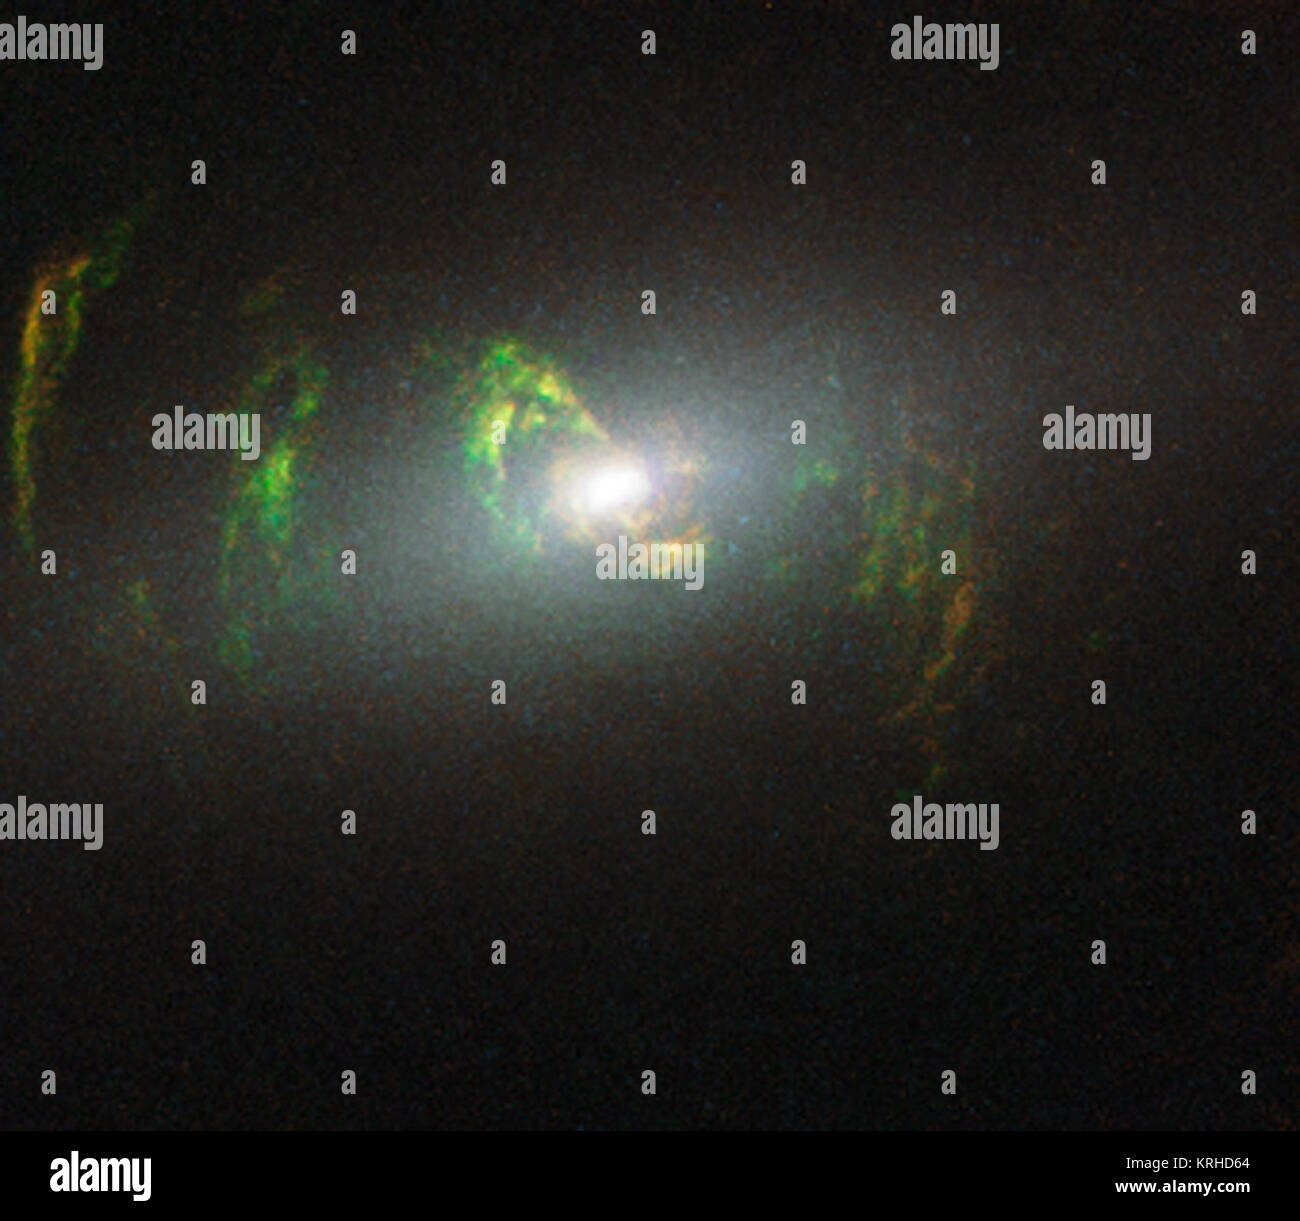 Diese neue NASA/ESA Hubble Space Telescope Bild zeigt Geisterhafte grüne Filamente, liegen innerhalb der Galaxie NGC 5252. Dieser Faden wurde durch einen Knall der Strahlung von einem Quasar beleuchtet - eine sehr helle und kompakte Region, dass das supermassive Schwarze Loch im Zentrum seiner Heimatgalaxie umgibt. Die hellen grünen Farbton ist ein Resultat von ionisiertem Sauerstoff, der Hell in grünen Wellenlängen leuchtet. Heic 1507 f Stockfoto